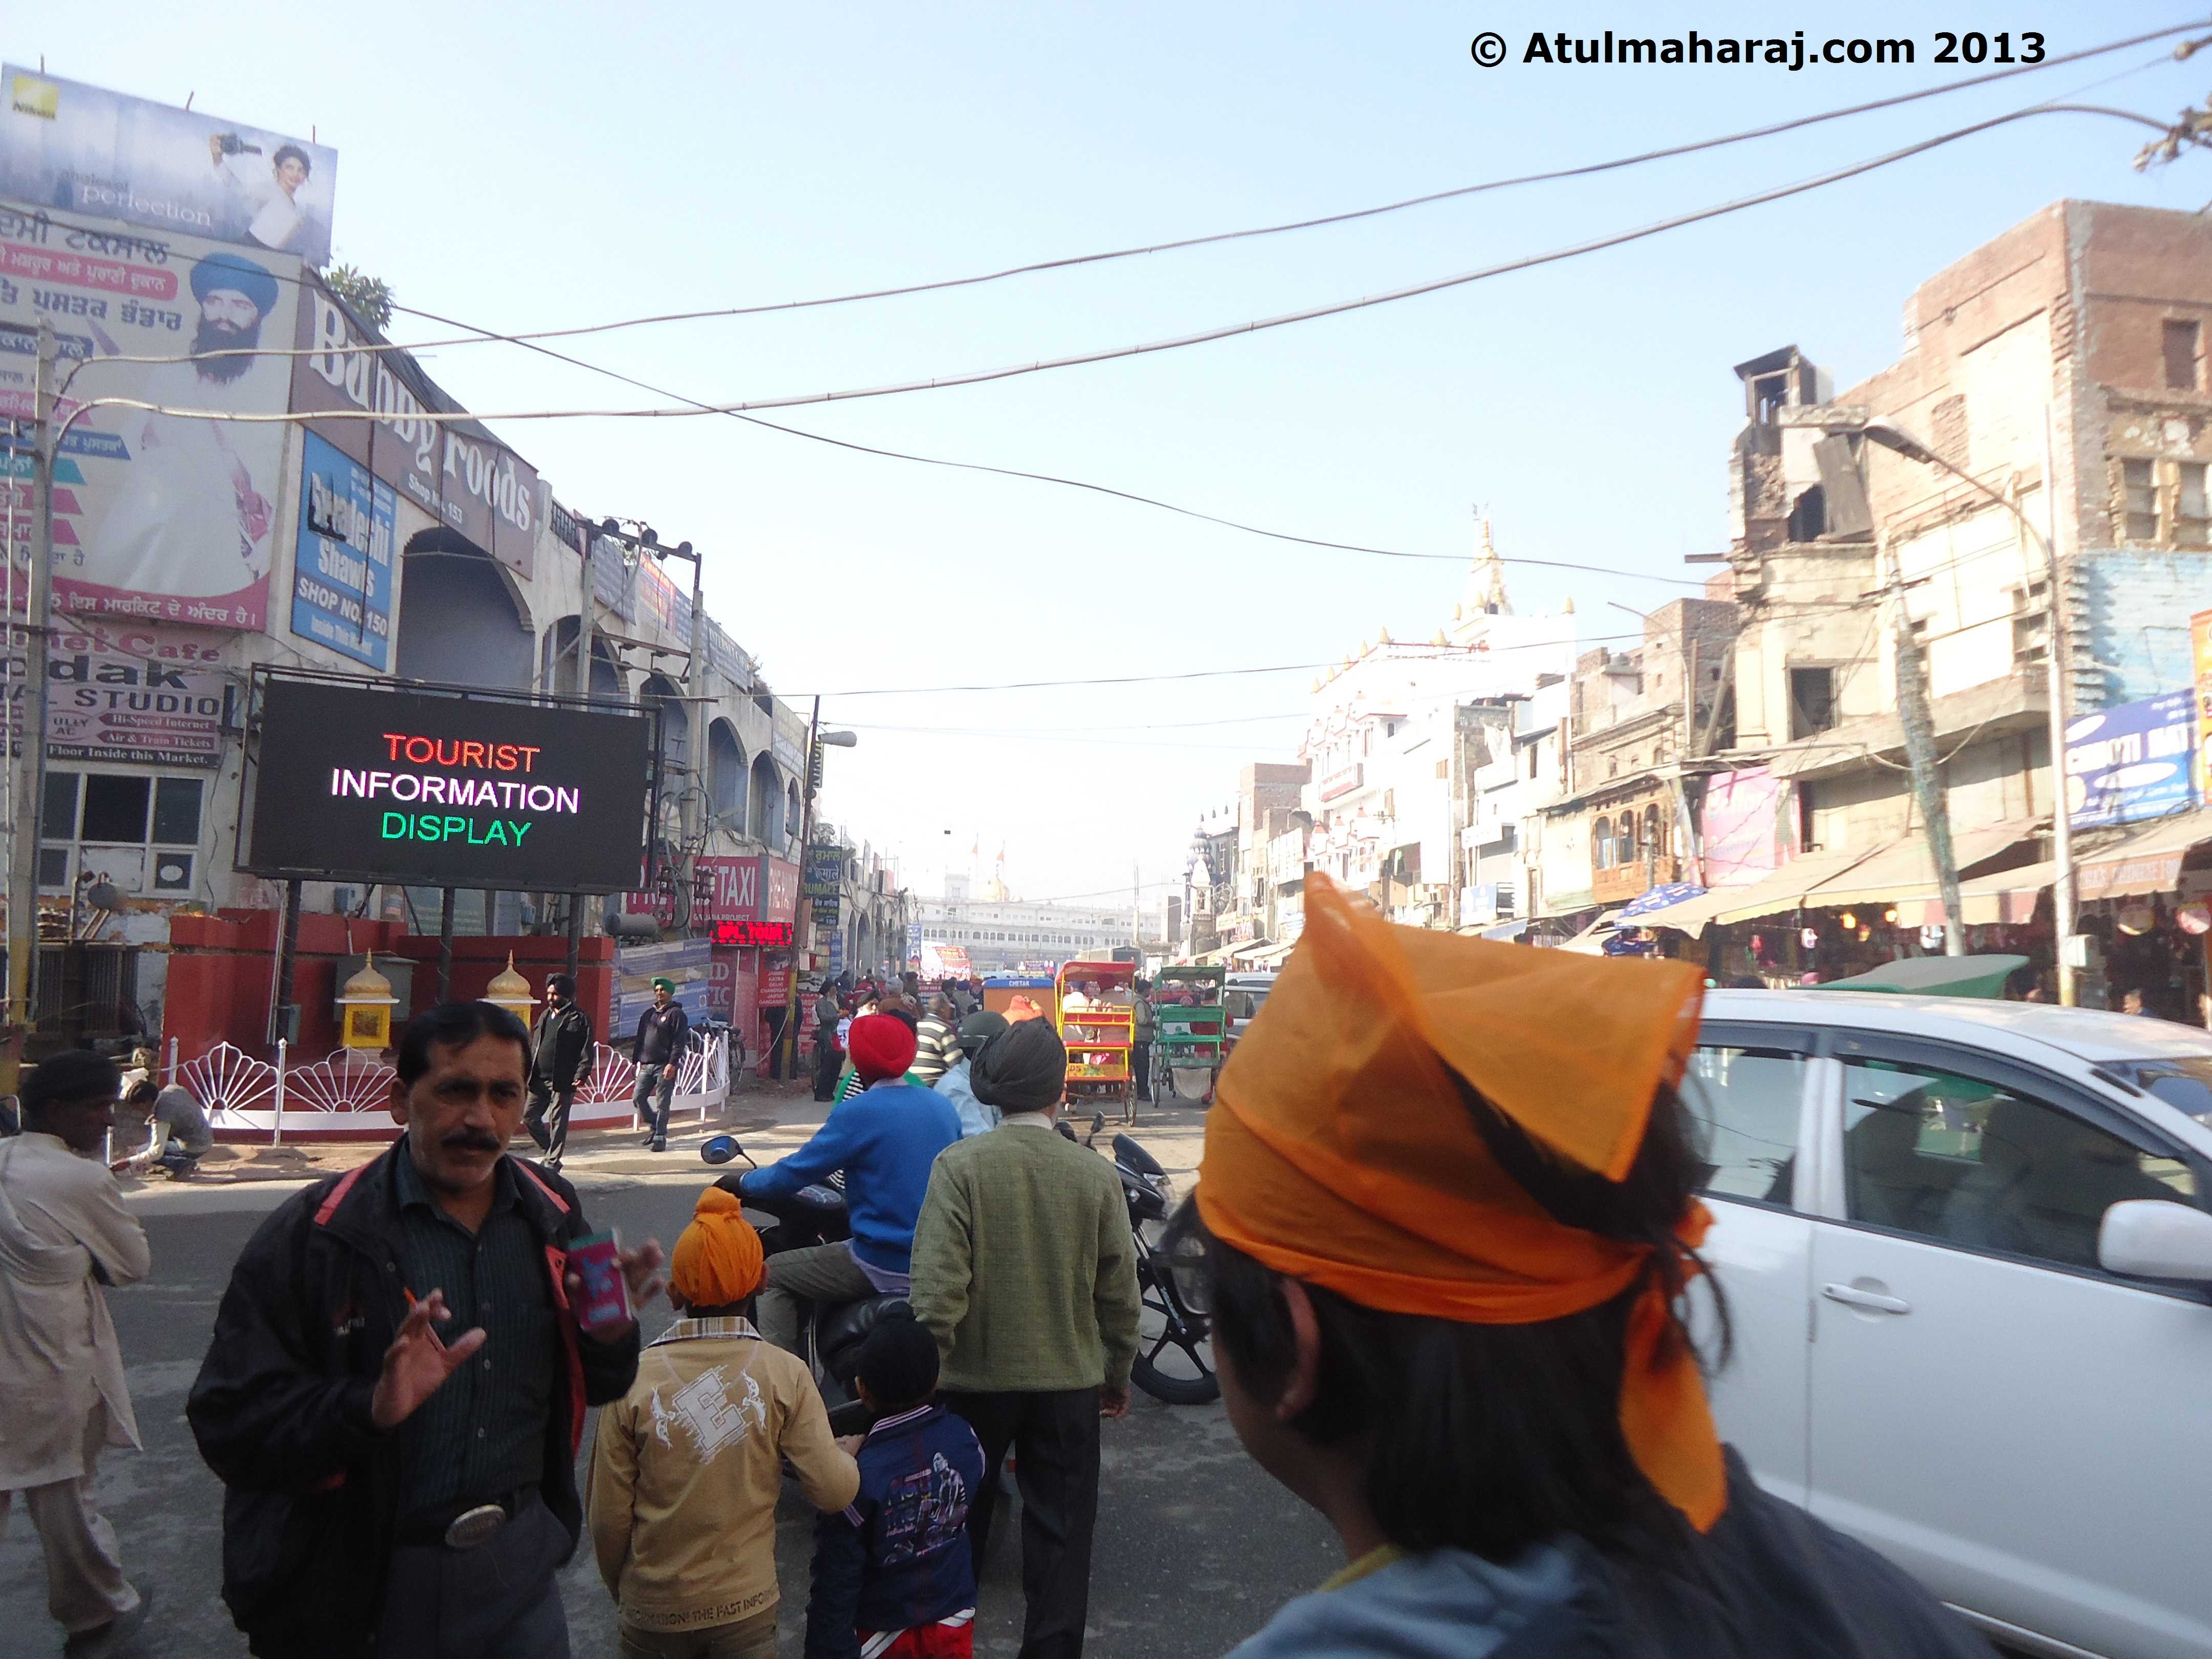 Streets of Amritsar. Courtesy: Atulmaharaj